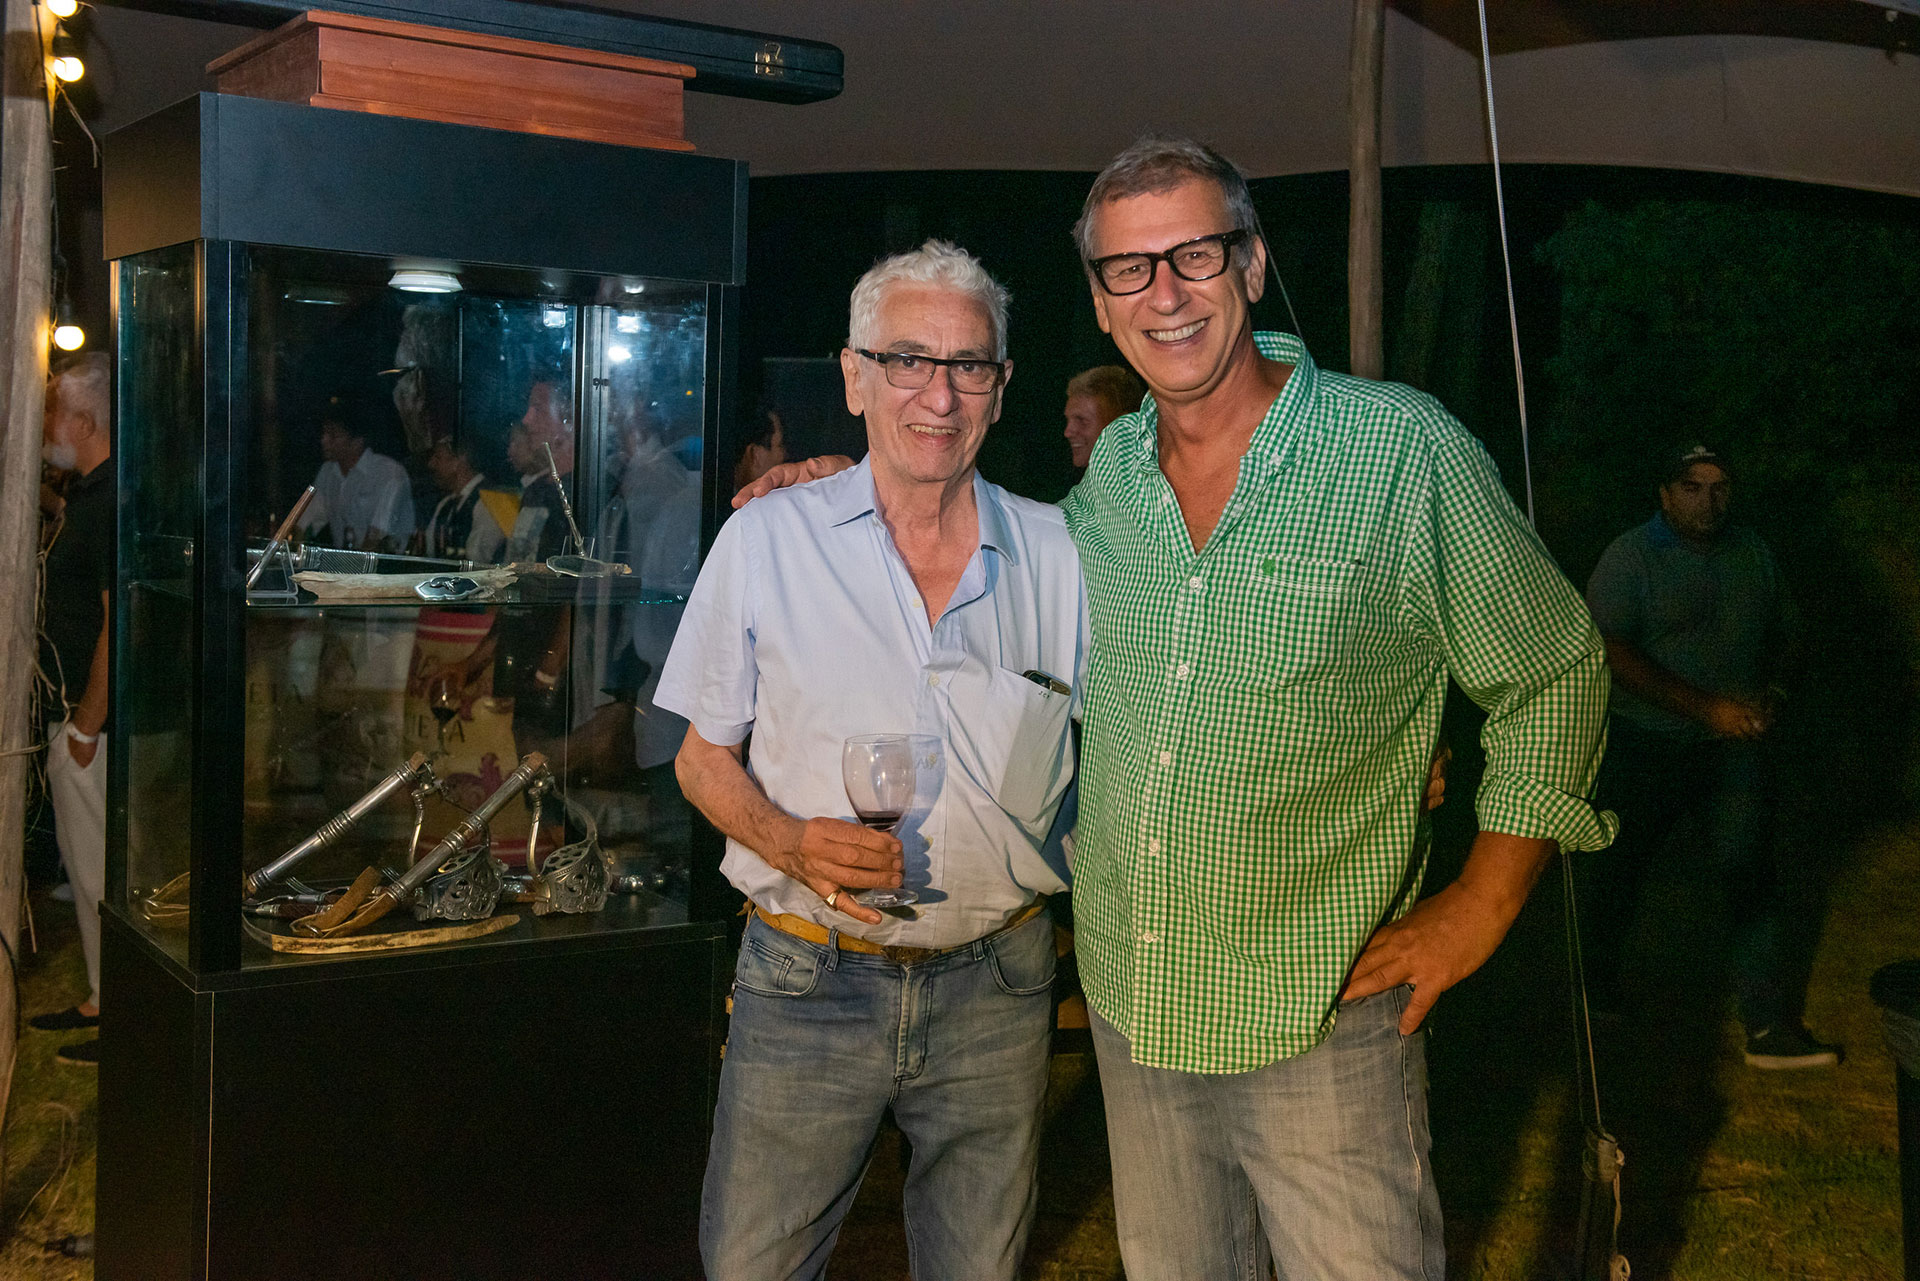 El artista Hugo Gassioles y el platero Juan Carlos Pallarols disfrutaron de una noche solidaria en la costa argentina